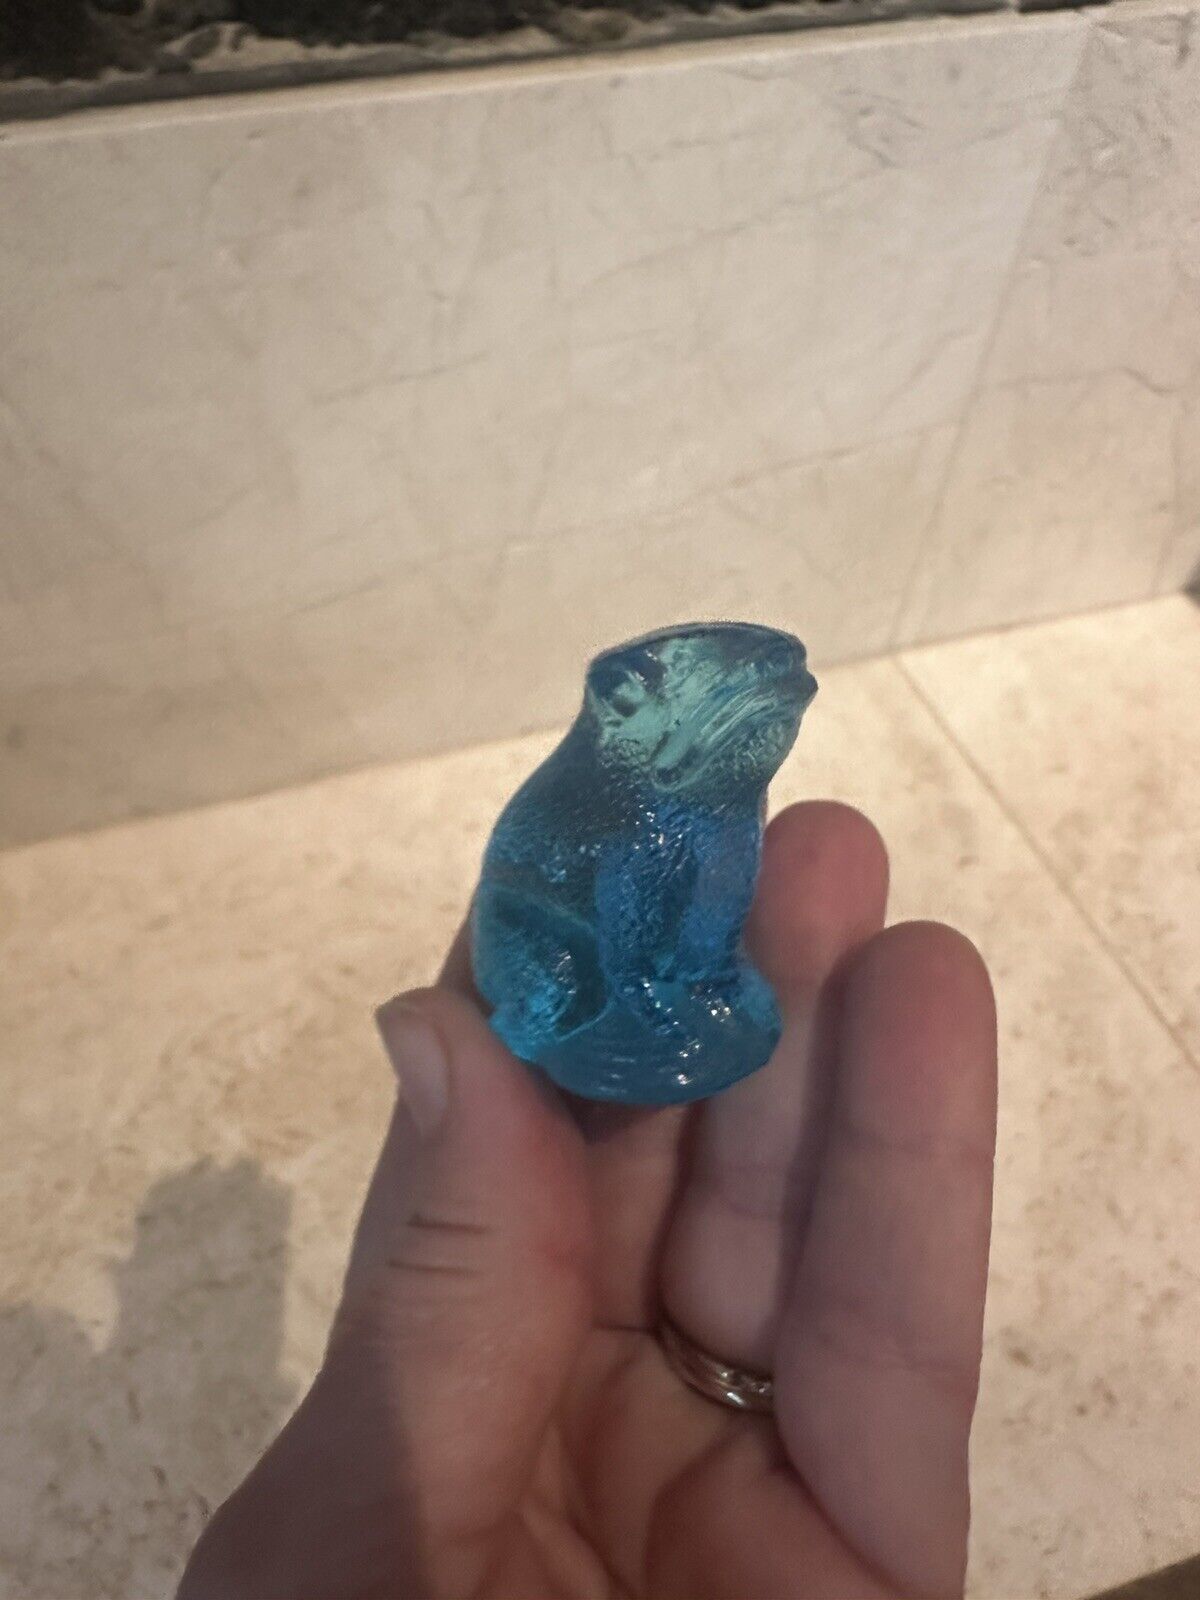 RARE VINTAGE Glass BLUE Speckled Frog CHARM CRACKER JACK PRIZE Glows